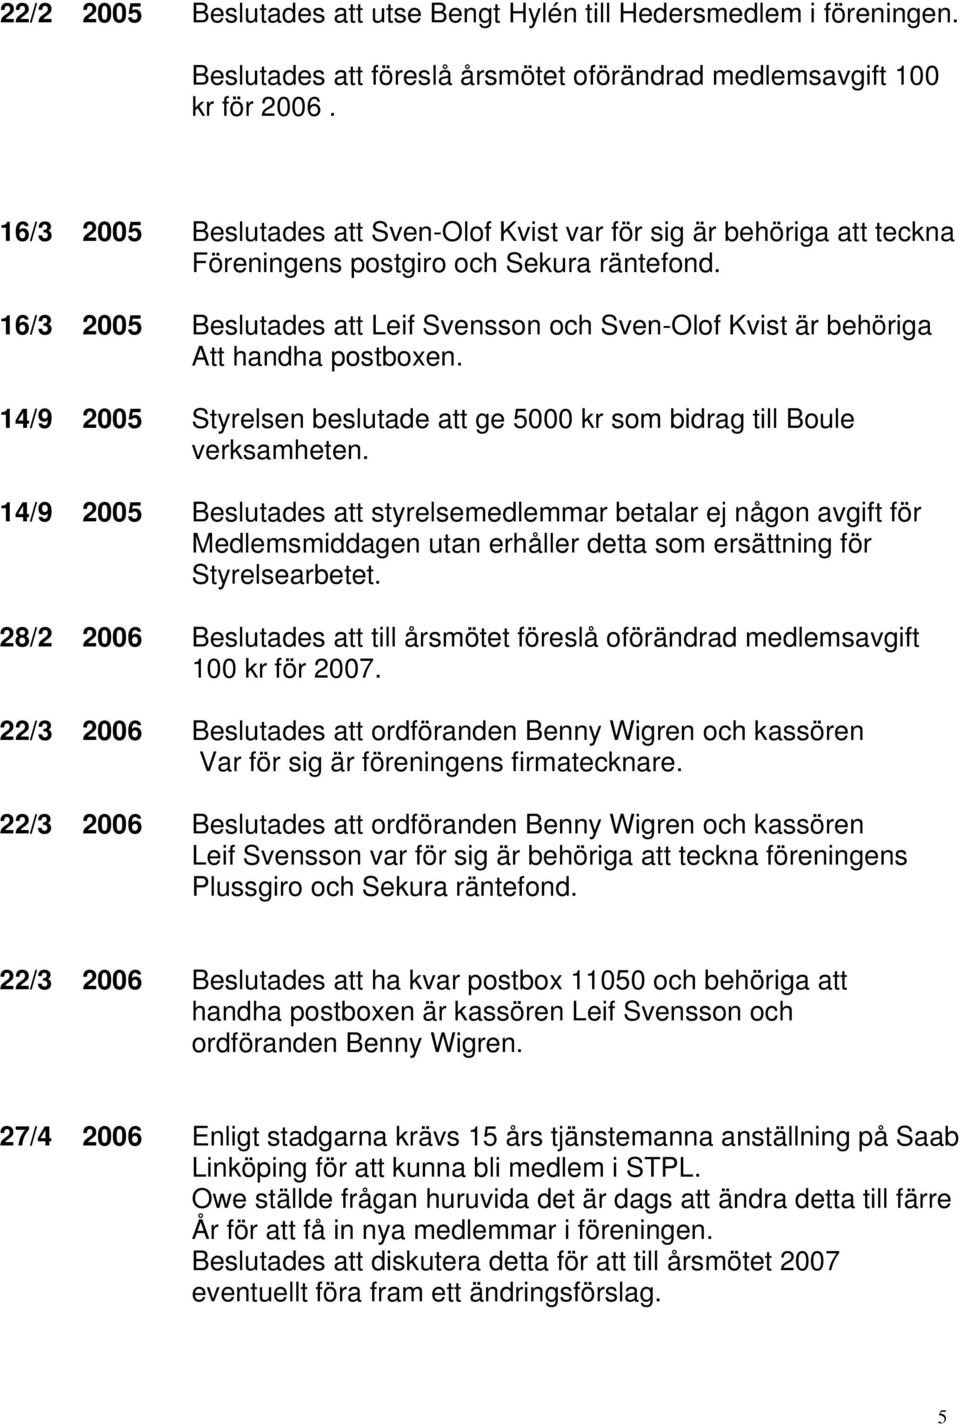 16/3 2005 Beslutades att Leif Svensson och Sven-Olof Kvist är behöriga Att handha postboxen. 14/9 2005 Styrelsen beslutade att ge 5000 kr som bidrag till Boule verksamheten.